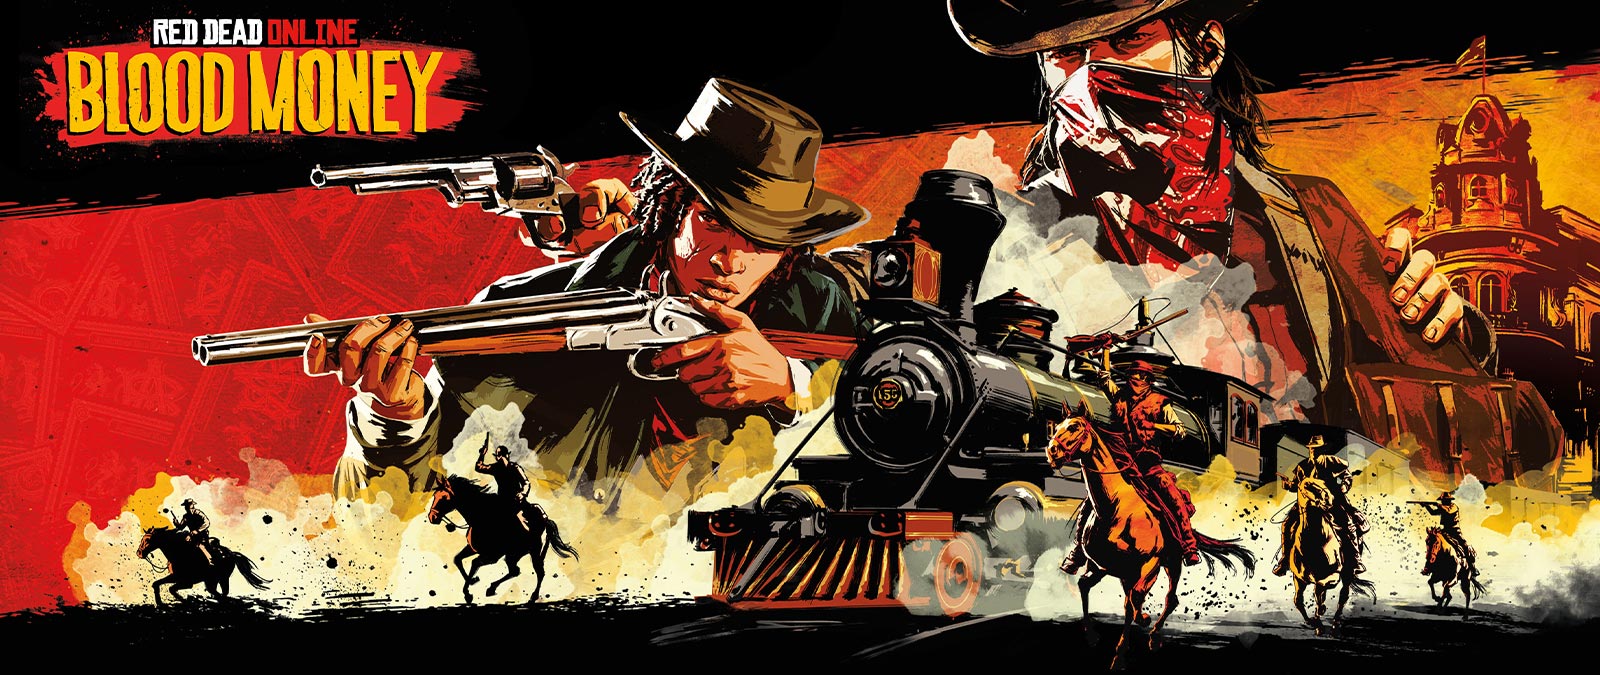 Red Dead Online: Blood Money, banditi armati a cavallo attaccano un treno.